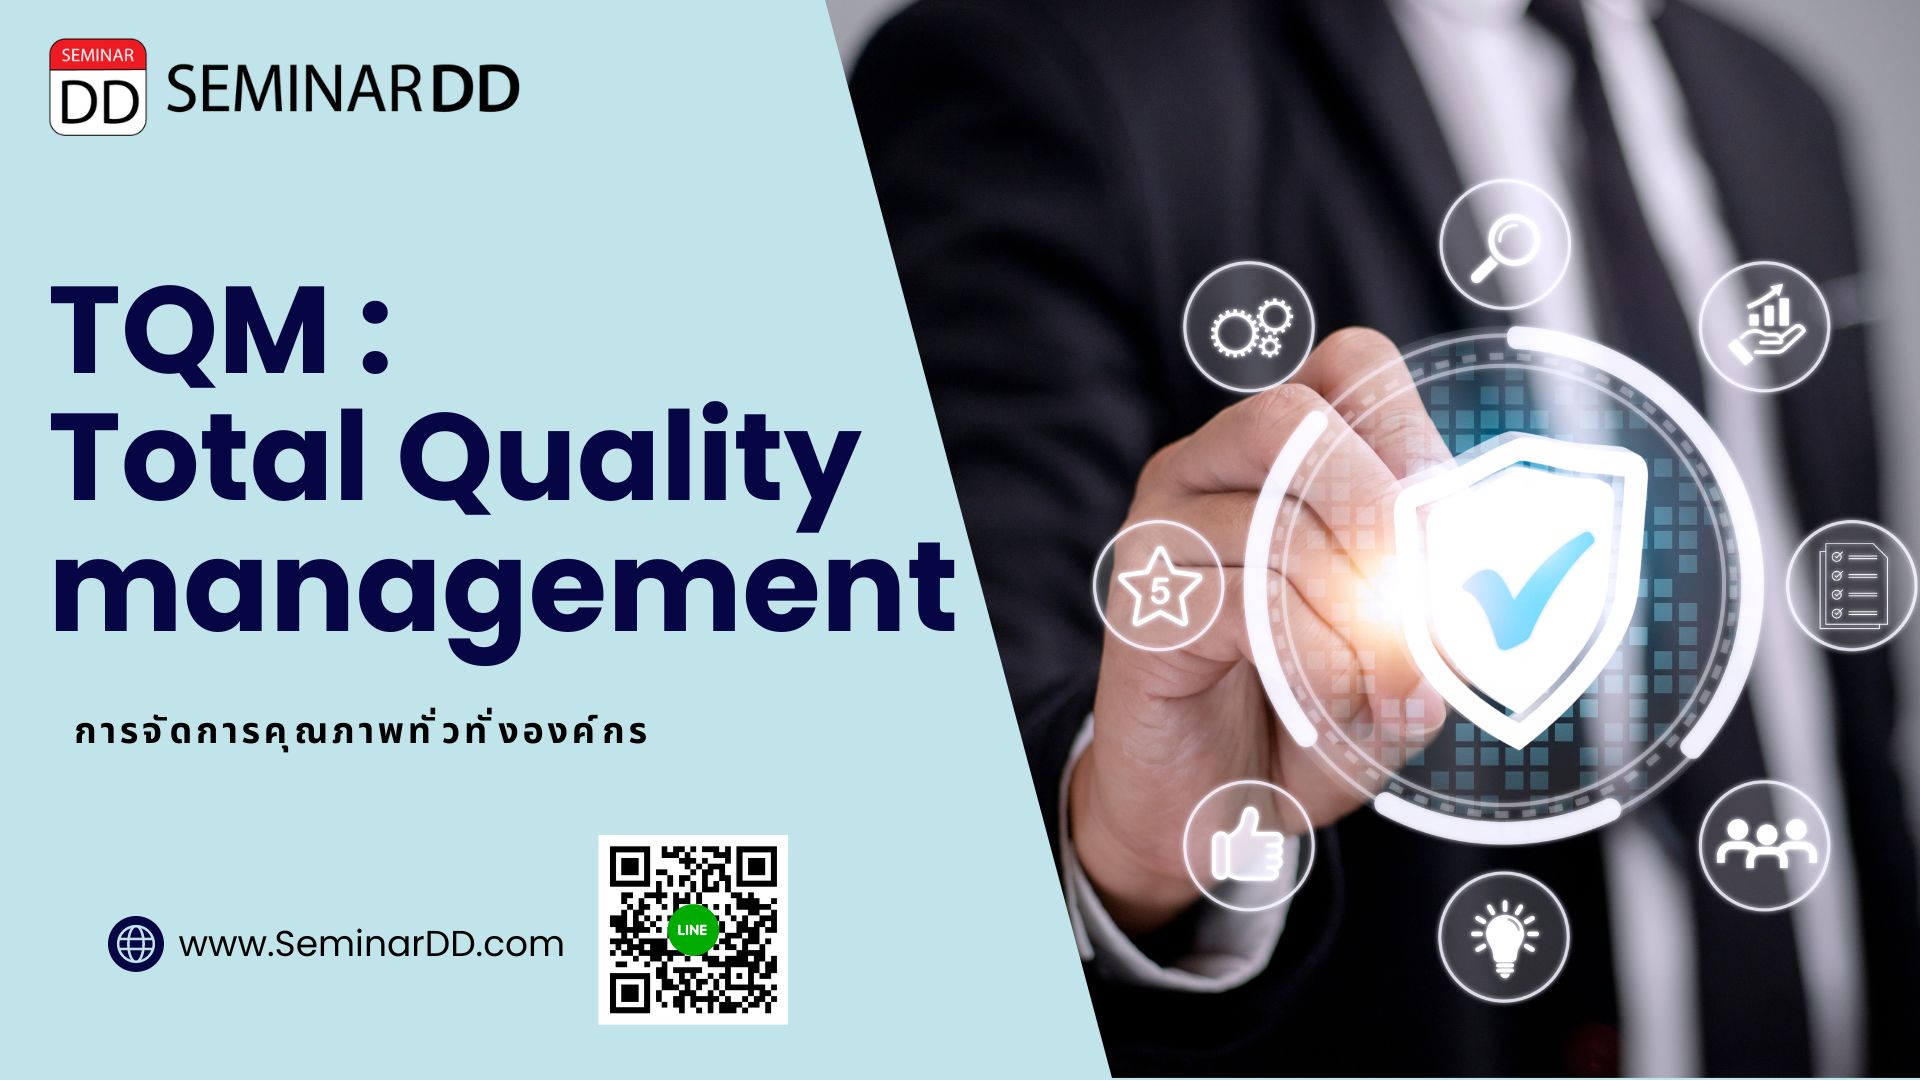 หลักสูตร การจัดการคุณภาพทั่วทั้งองค์กร (TQM : Total Quality Management)